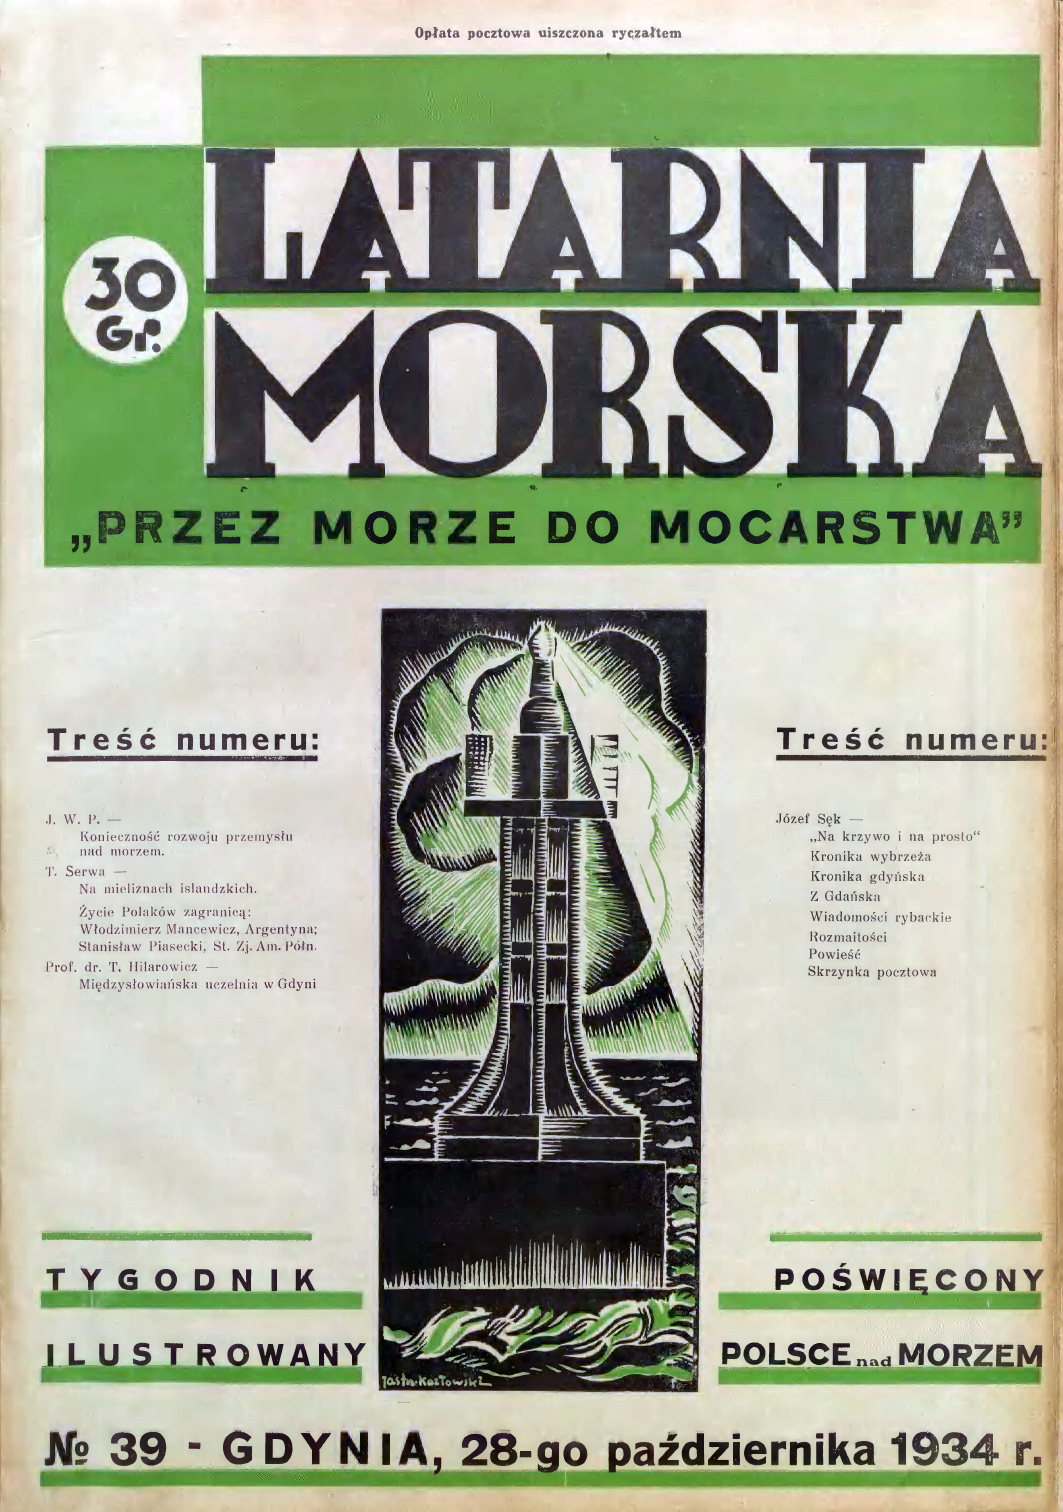 Latarnia Morska: tygodnik ilustrowany poświęcony Polsce nad morzem. – Gdynia : Balto Polak – Zakłady Graficzne i Wydawnicze, 1934, nr 38